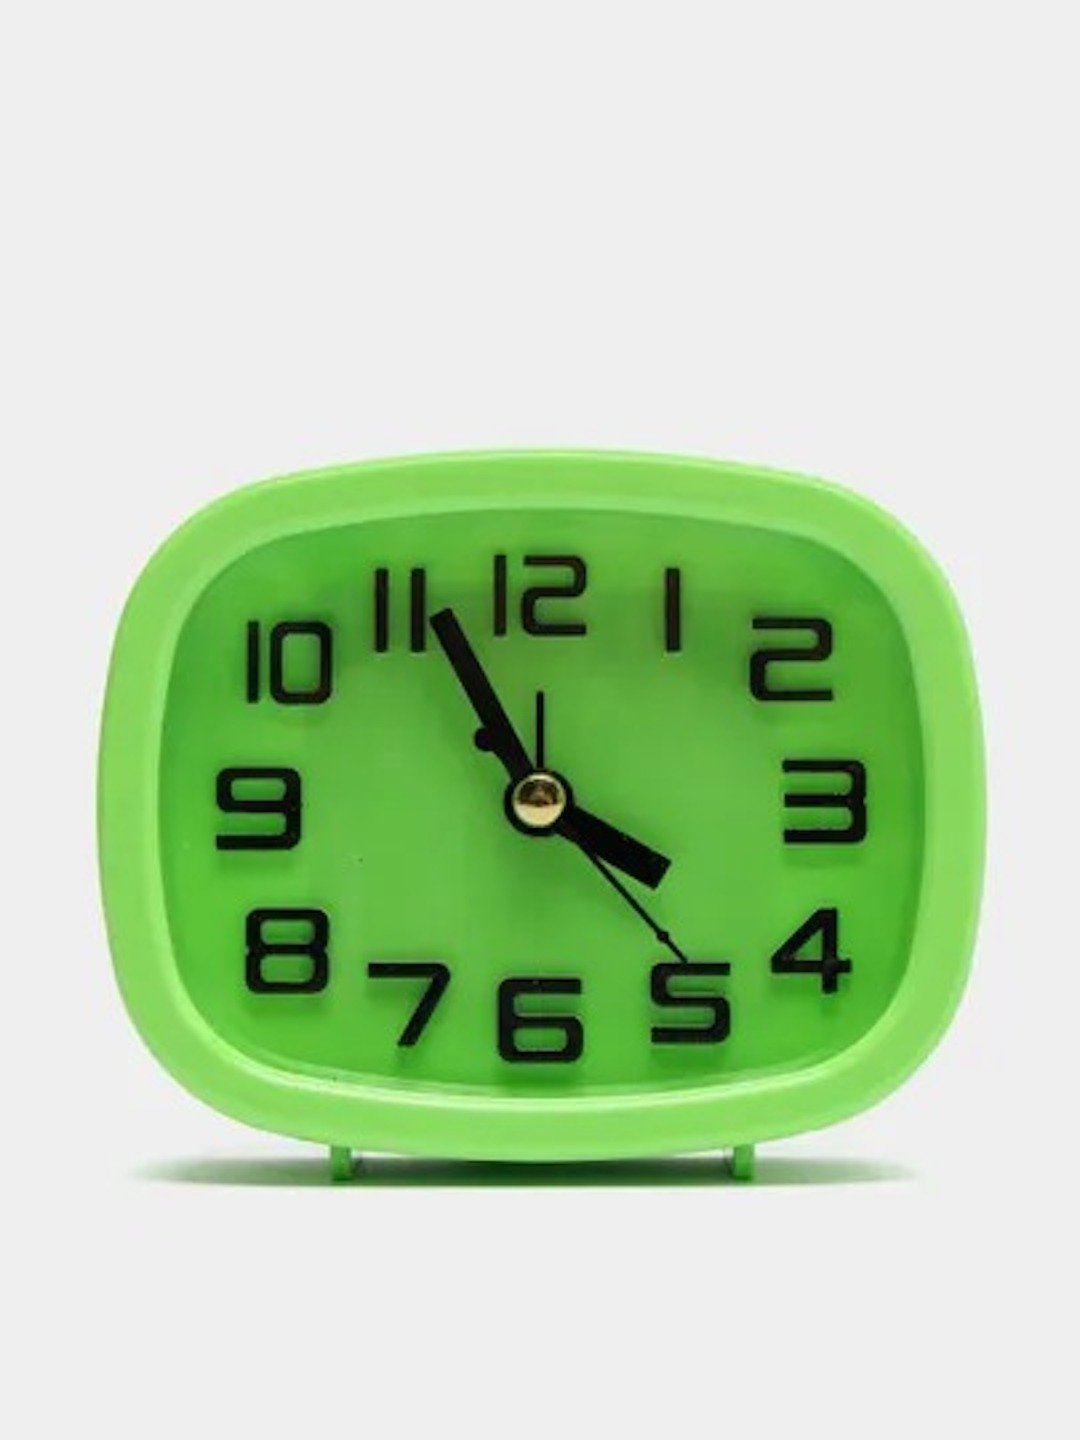 Часы,будильникнастольный,электронный,прикроватный,механический,громкийсозвукомкупитьпоцене198₽винтернет-магазинеKazanExpress